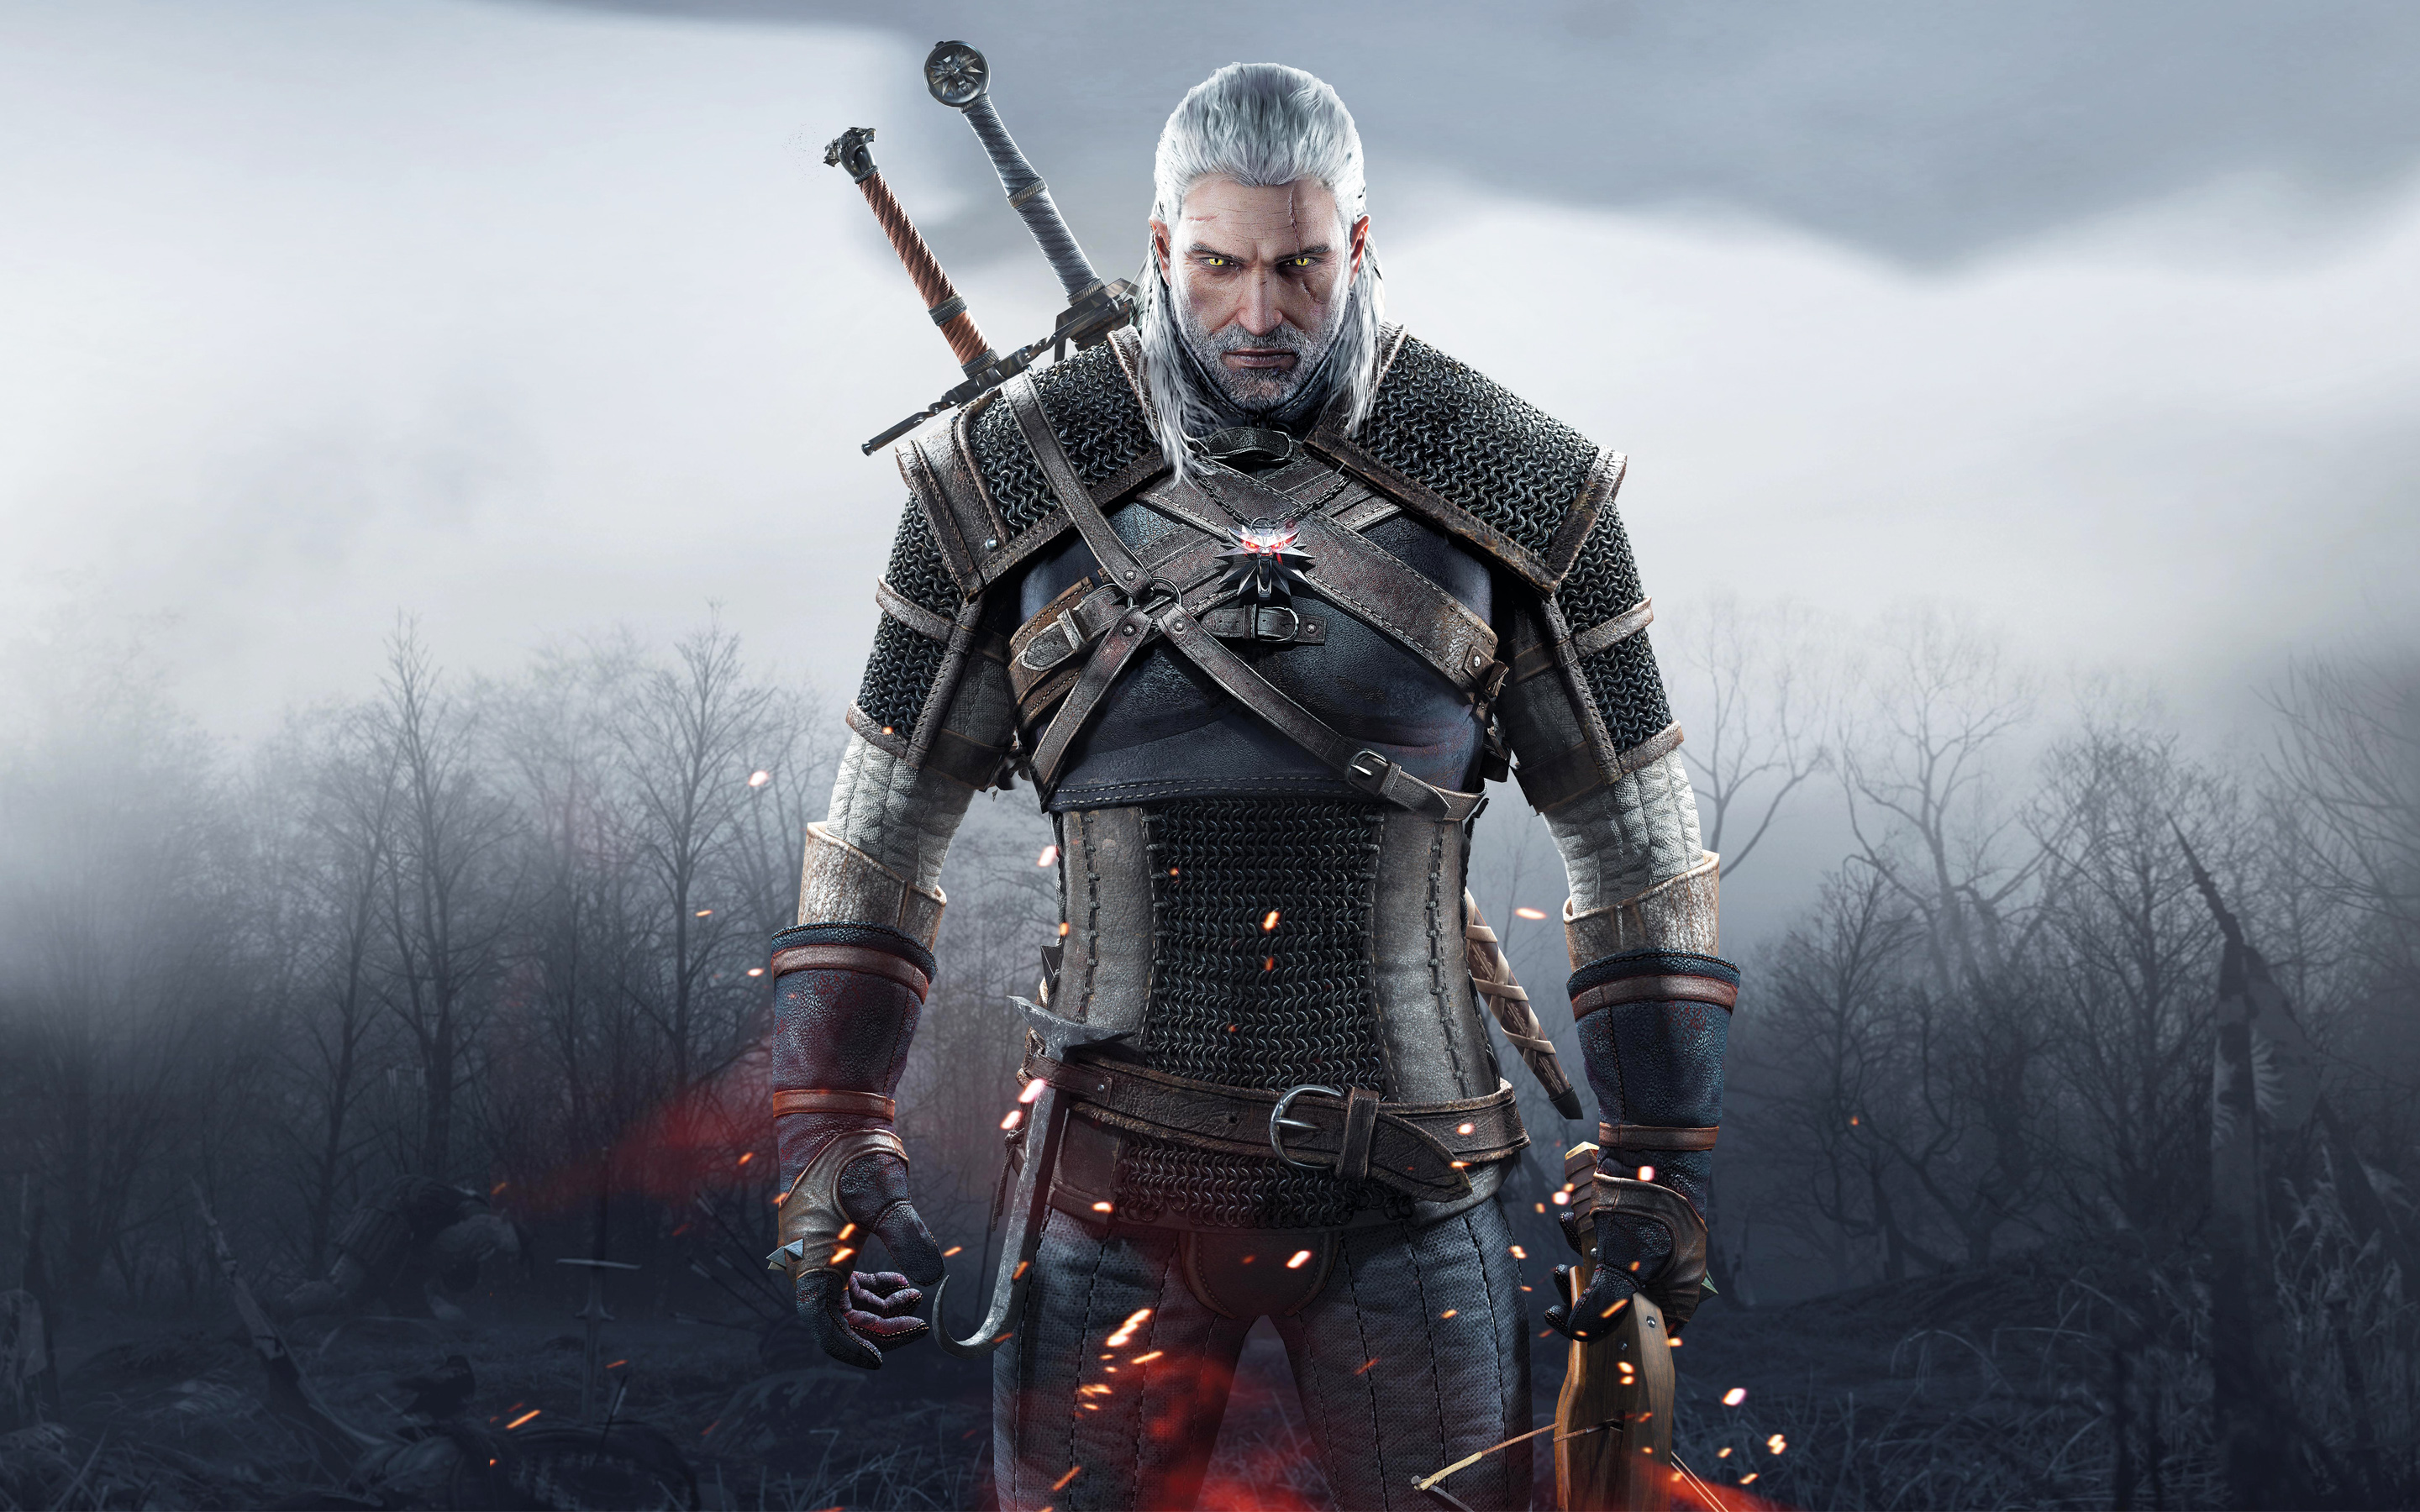 Geralt looking like a bad ass